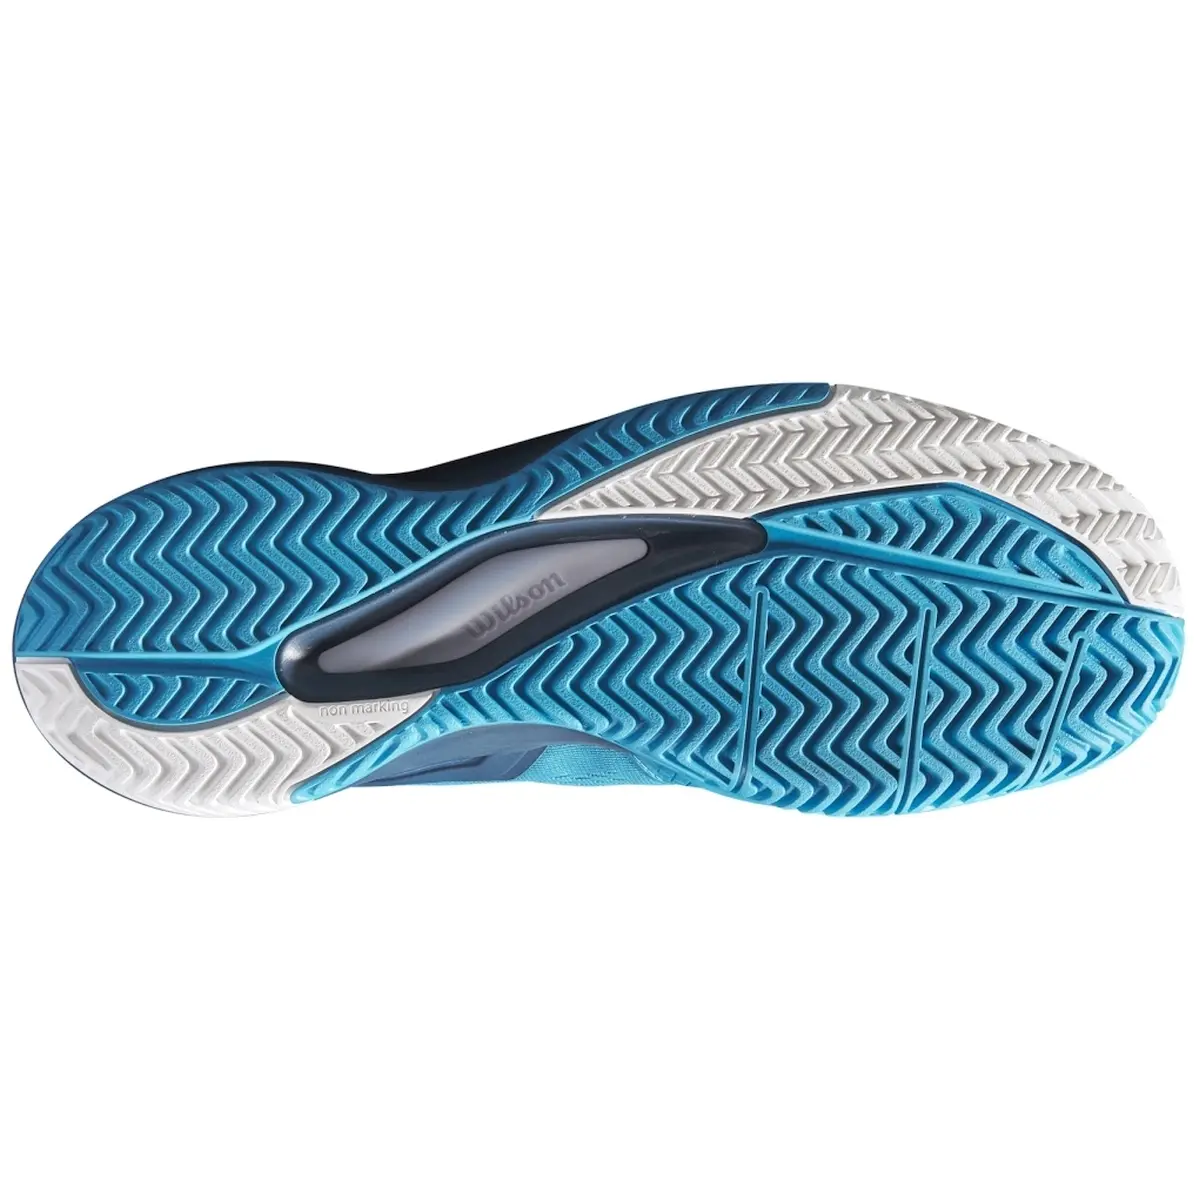 Wilson Men's Rush Pro 3.5 Tennis Shoe (Barrier Reef/Majolica Blue/White)